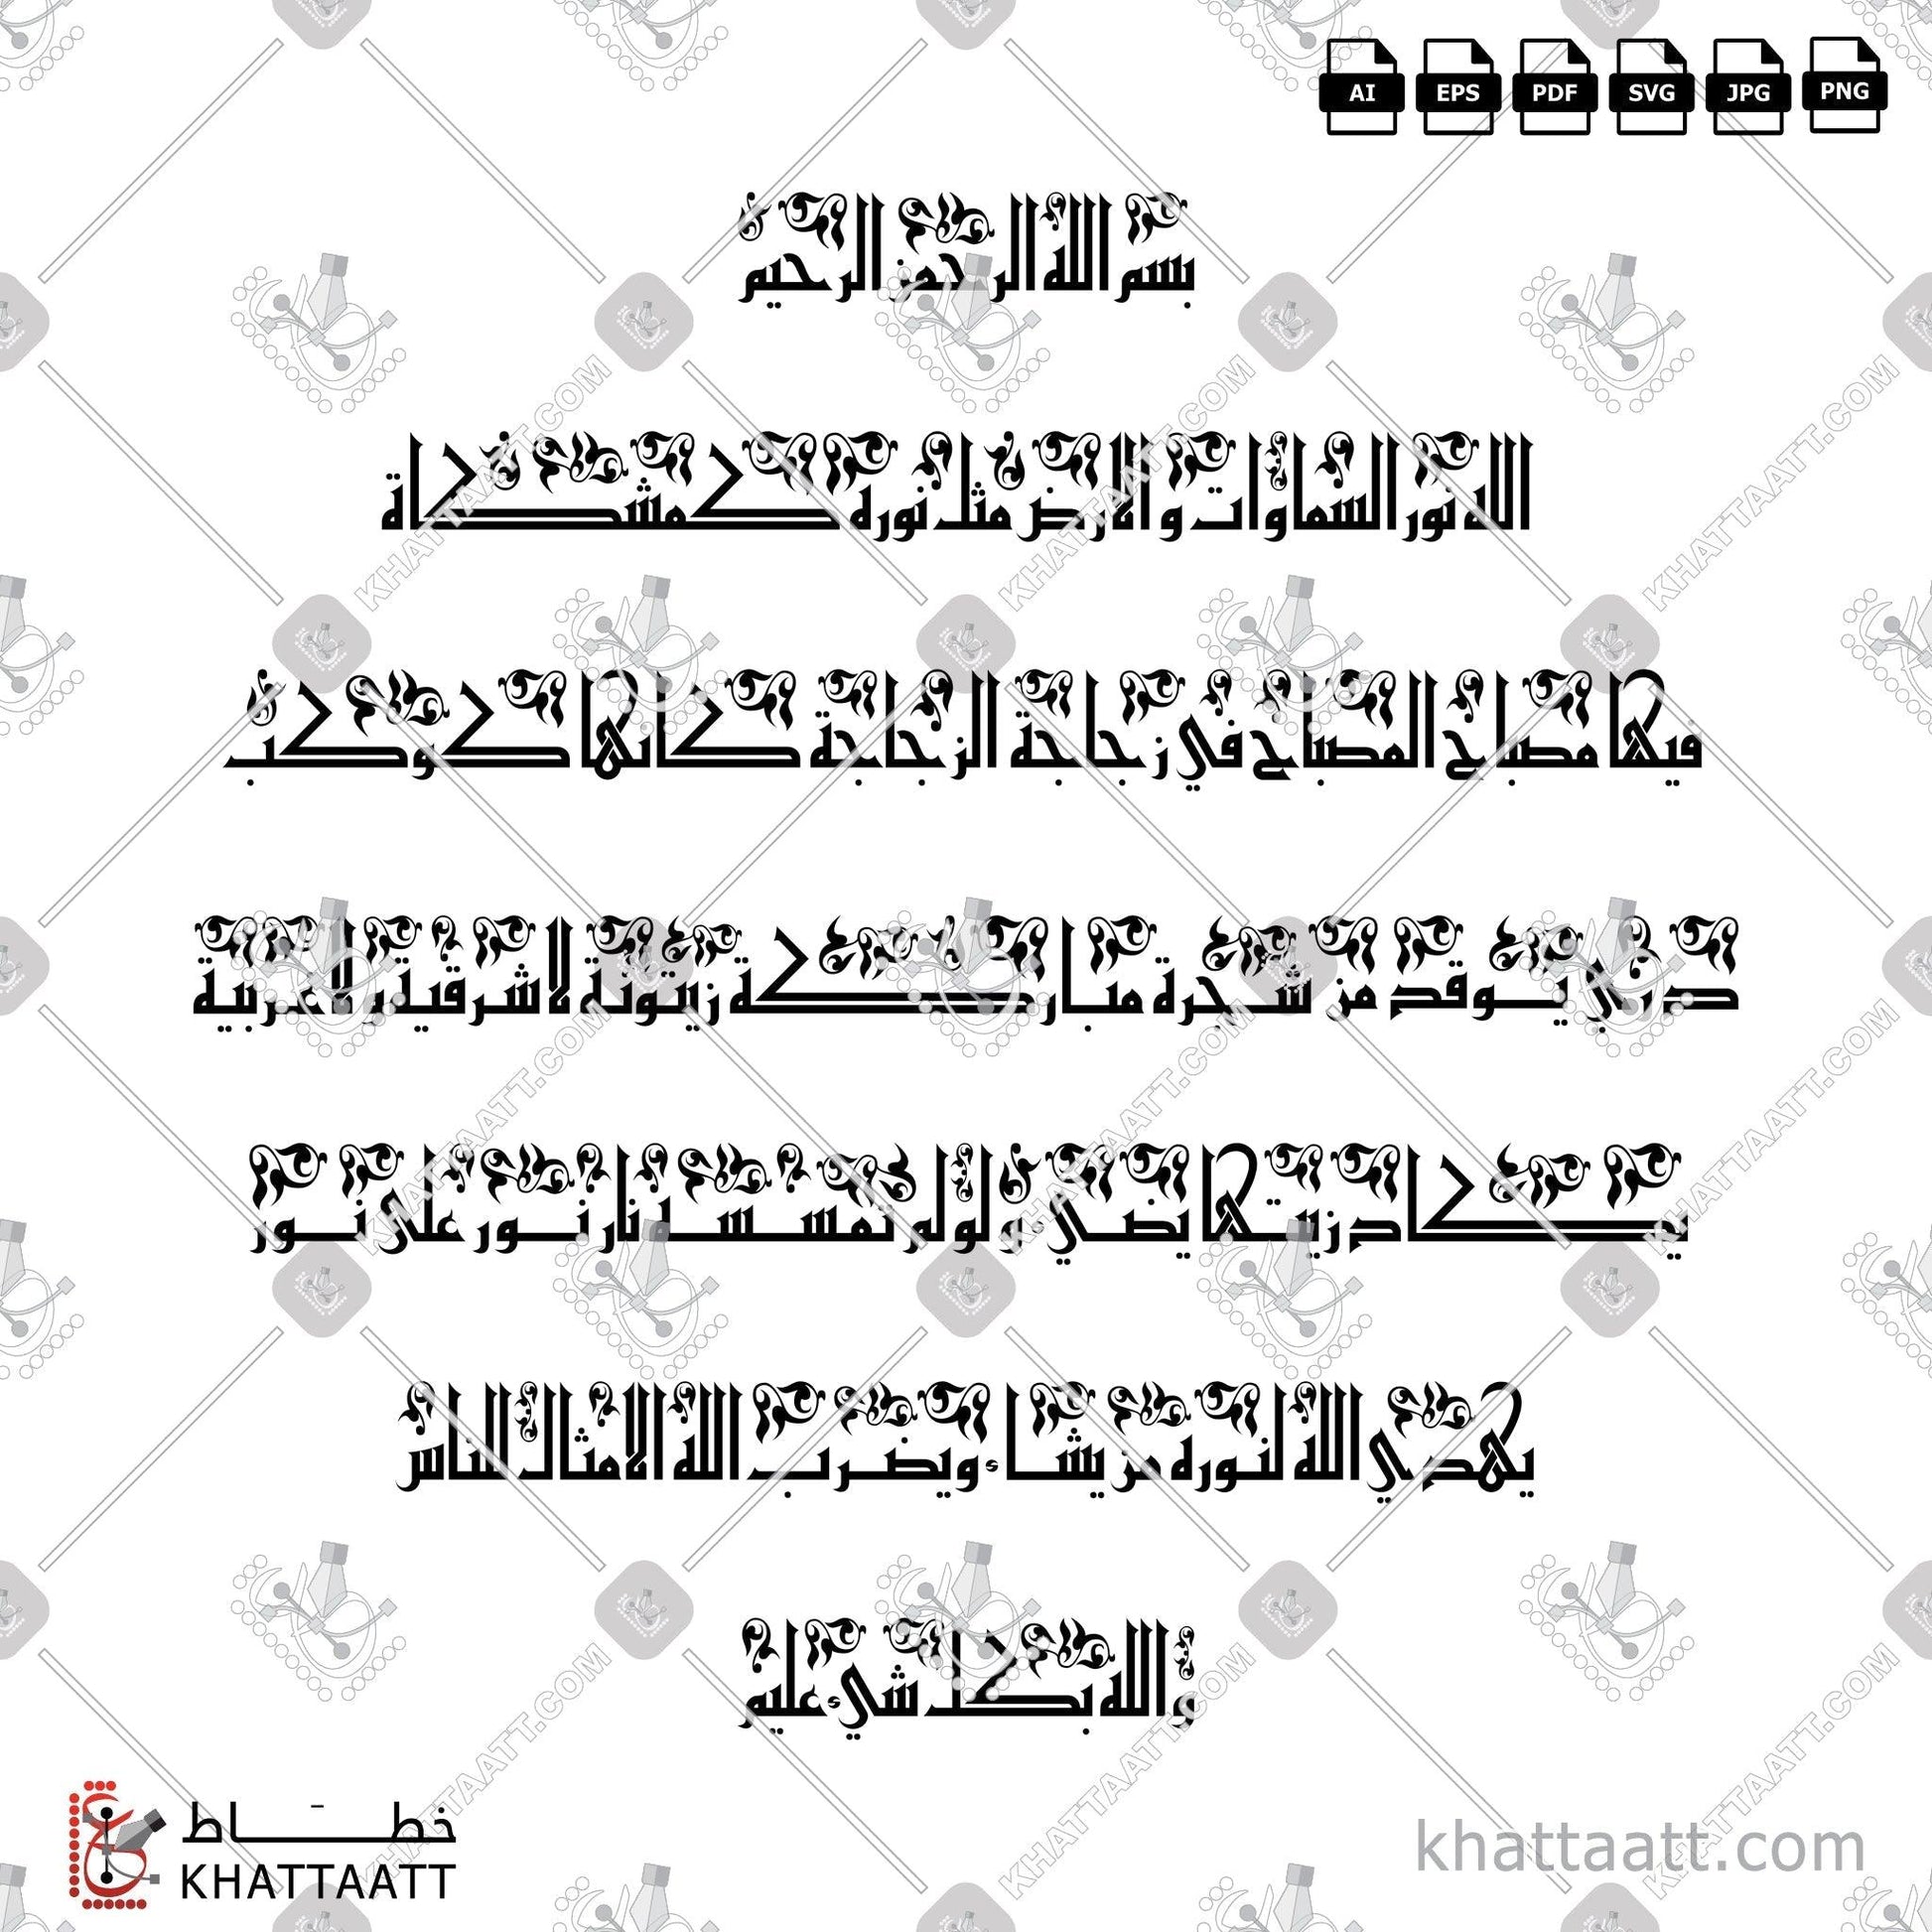 Download Arabic Calligraphy of Ayat An-Noor - آية النور in Kufi - الخط الكوفي in vector and .png